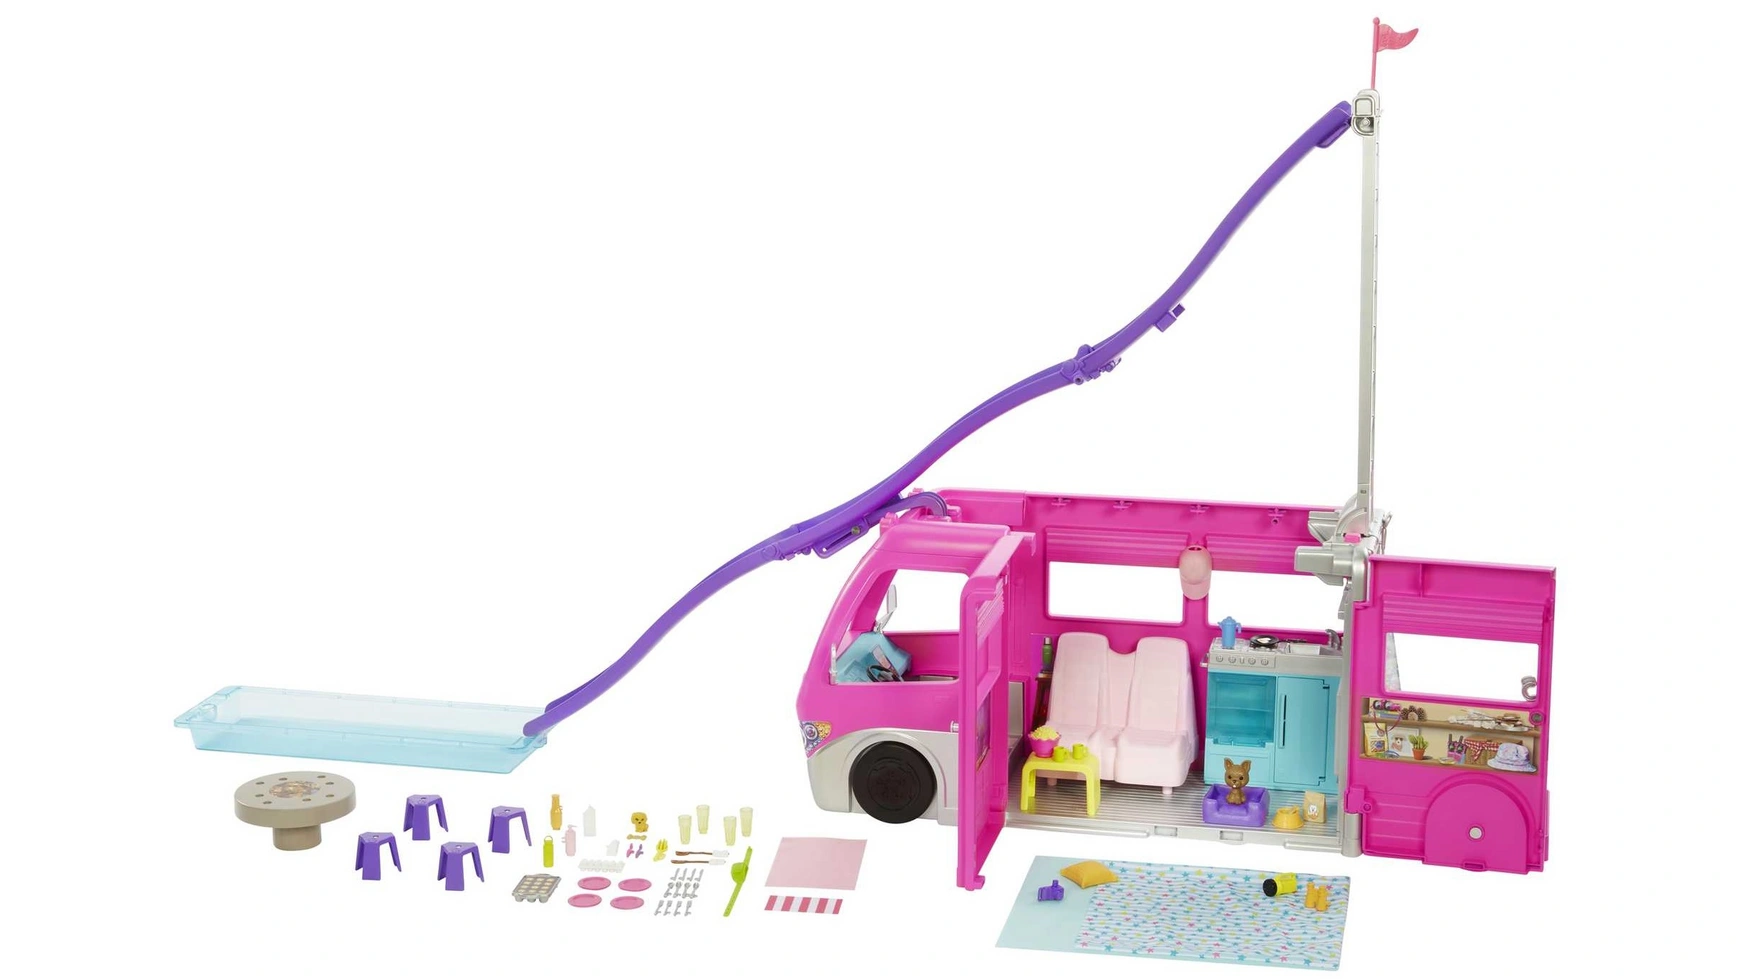 игровой набор barbie caravan dream camper Автомобиль Barbie Super Adventure Camper высотой 76 см с бассейном, горкой и более 60 аксессуарами.